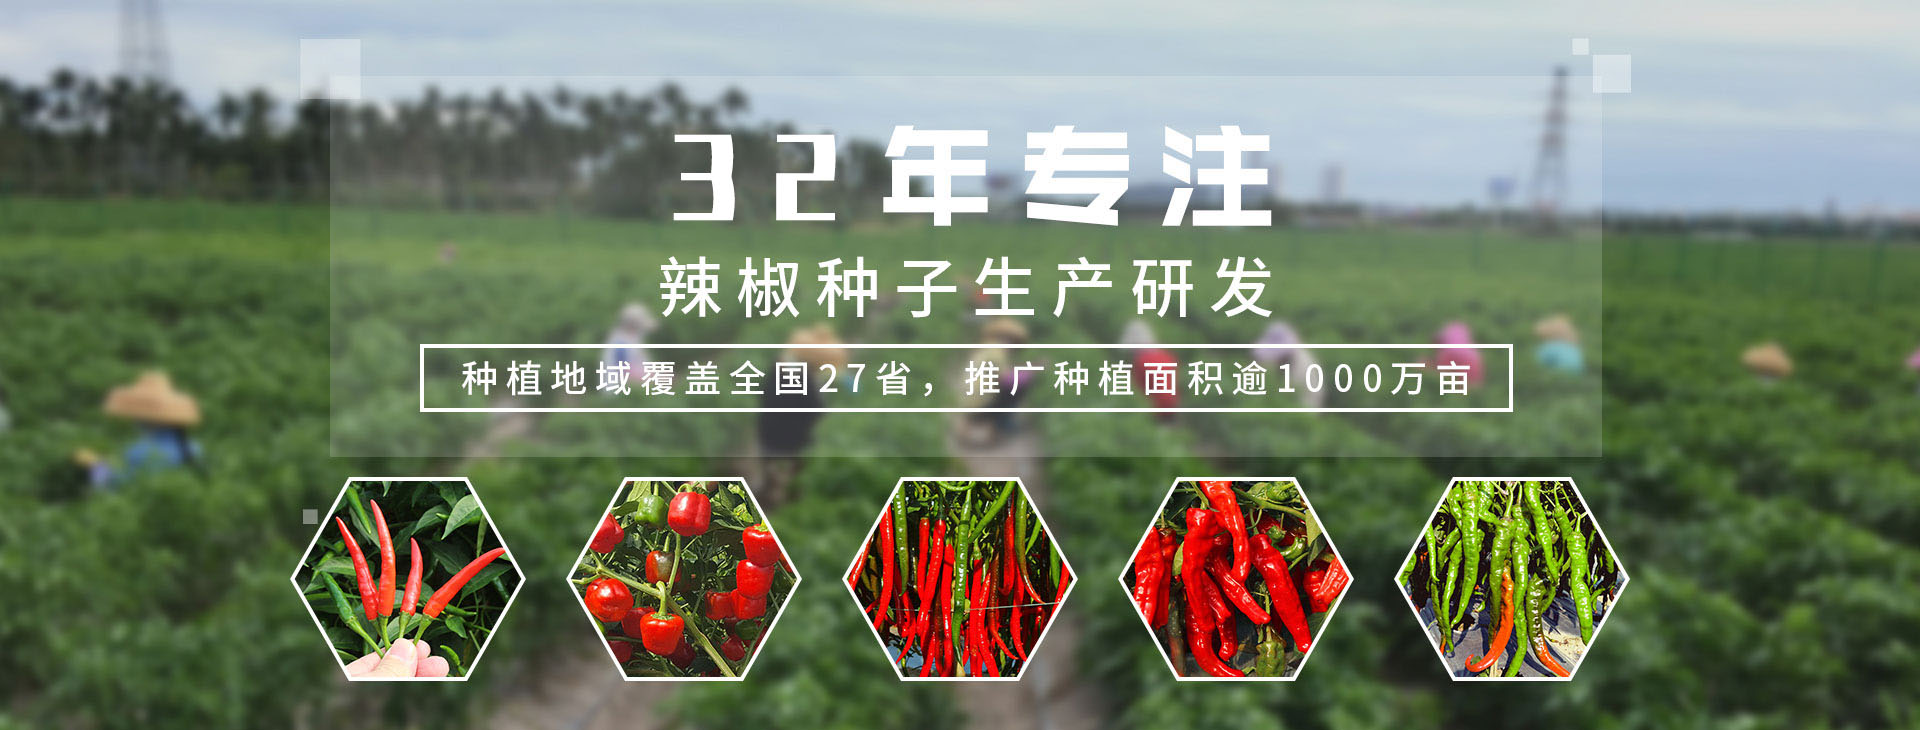 32年专注辣椒种子生产研发，种植地域覆盖全国27省，推广种植面积逾1000万亩